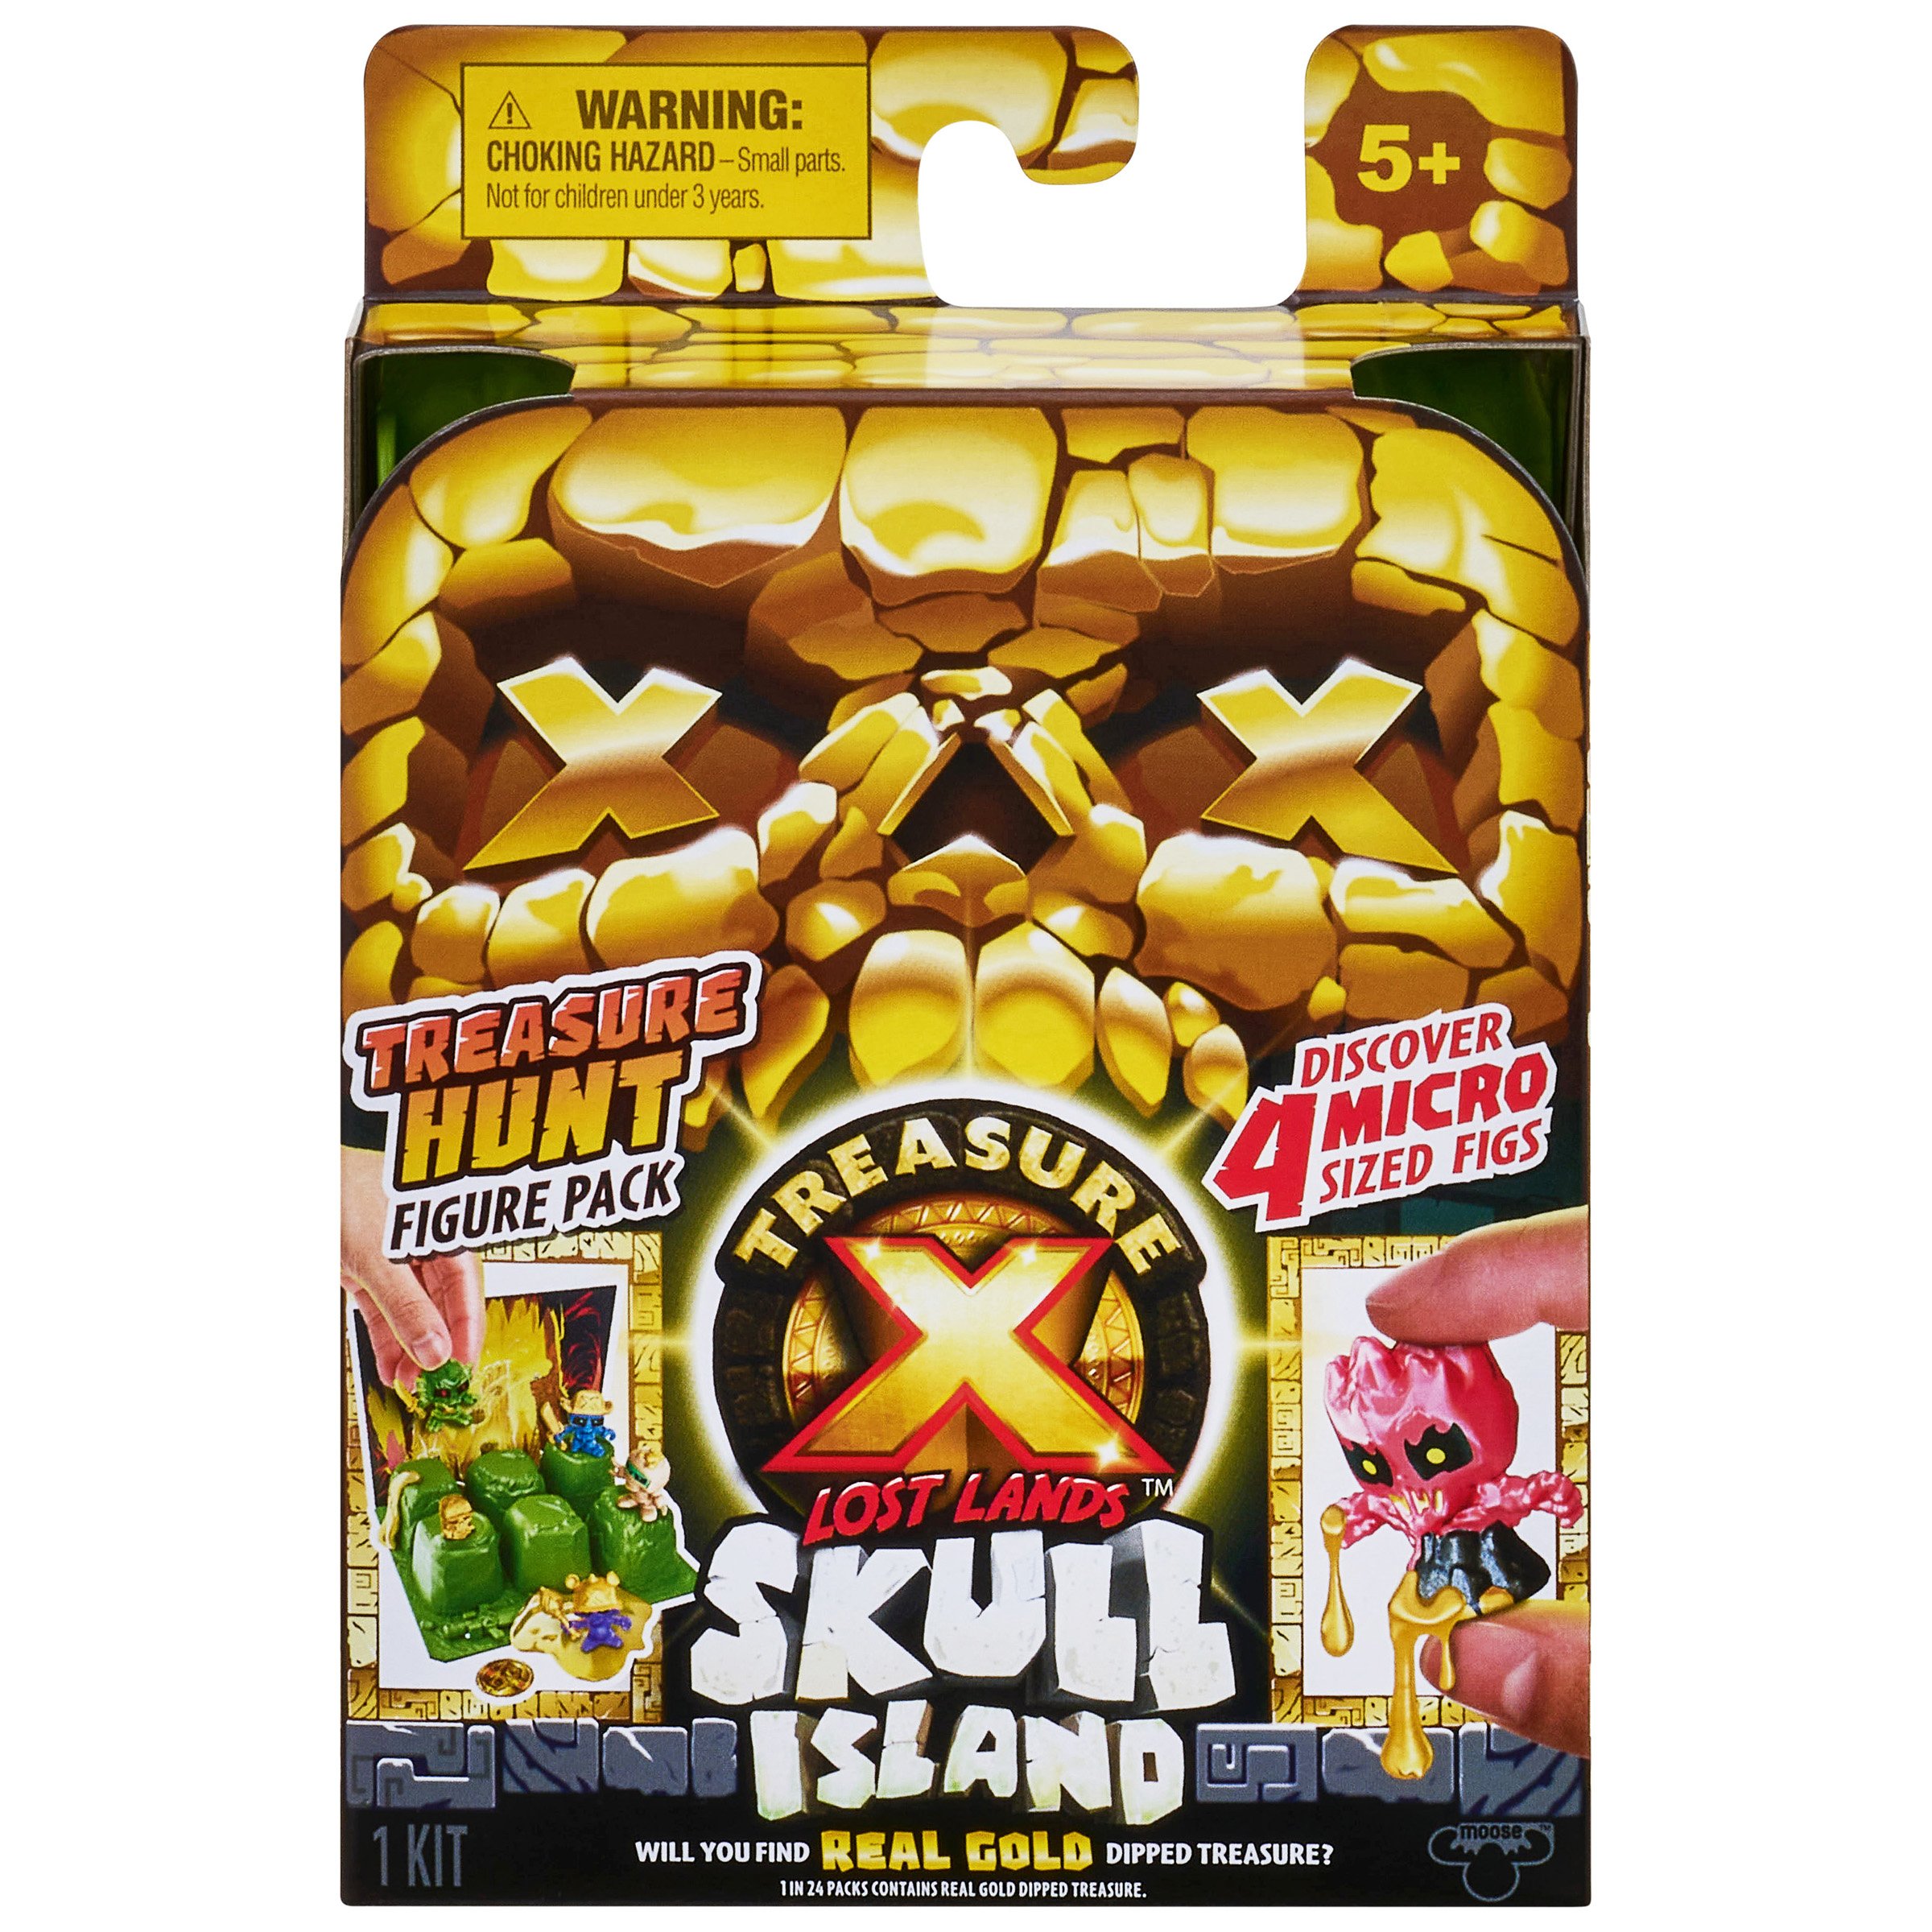 Treasure X Lost Lands Skull Island Treasure Hunt Micro Figure Pack